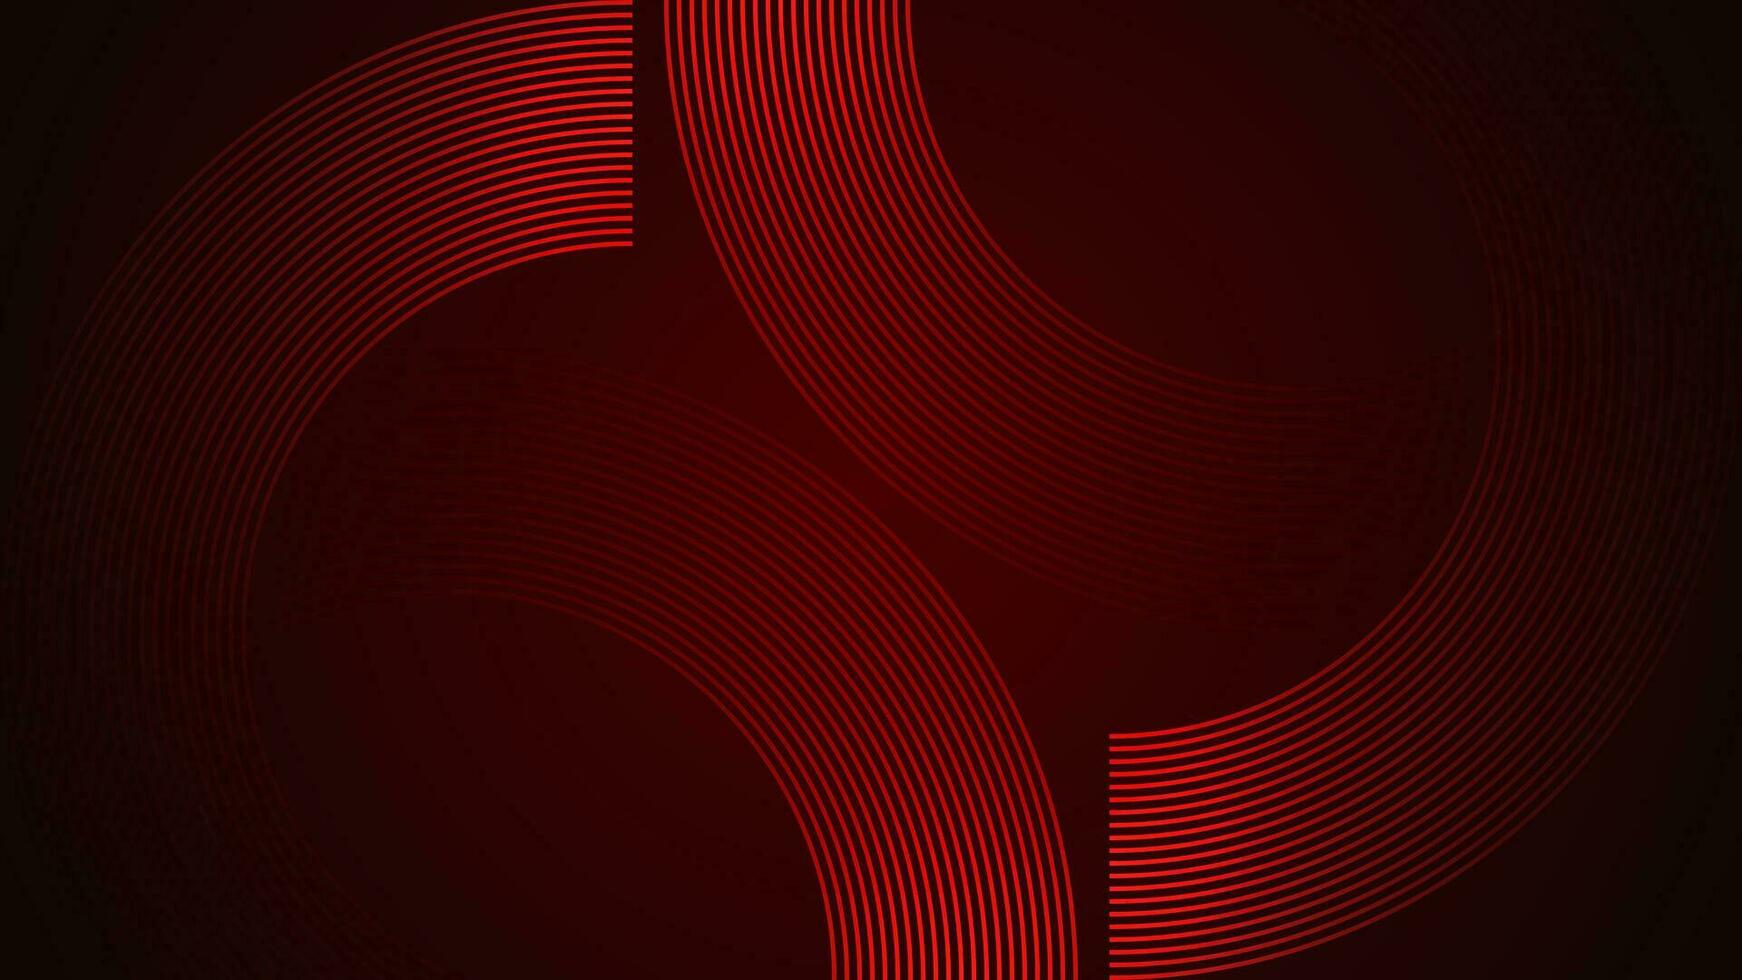 mörk röd enkel abstrakt bakgrund med rader i en böjd stil geometrisk stil som de huvud element. vektor